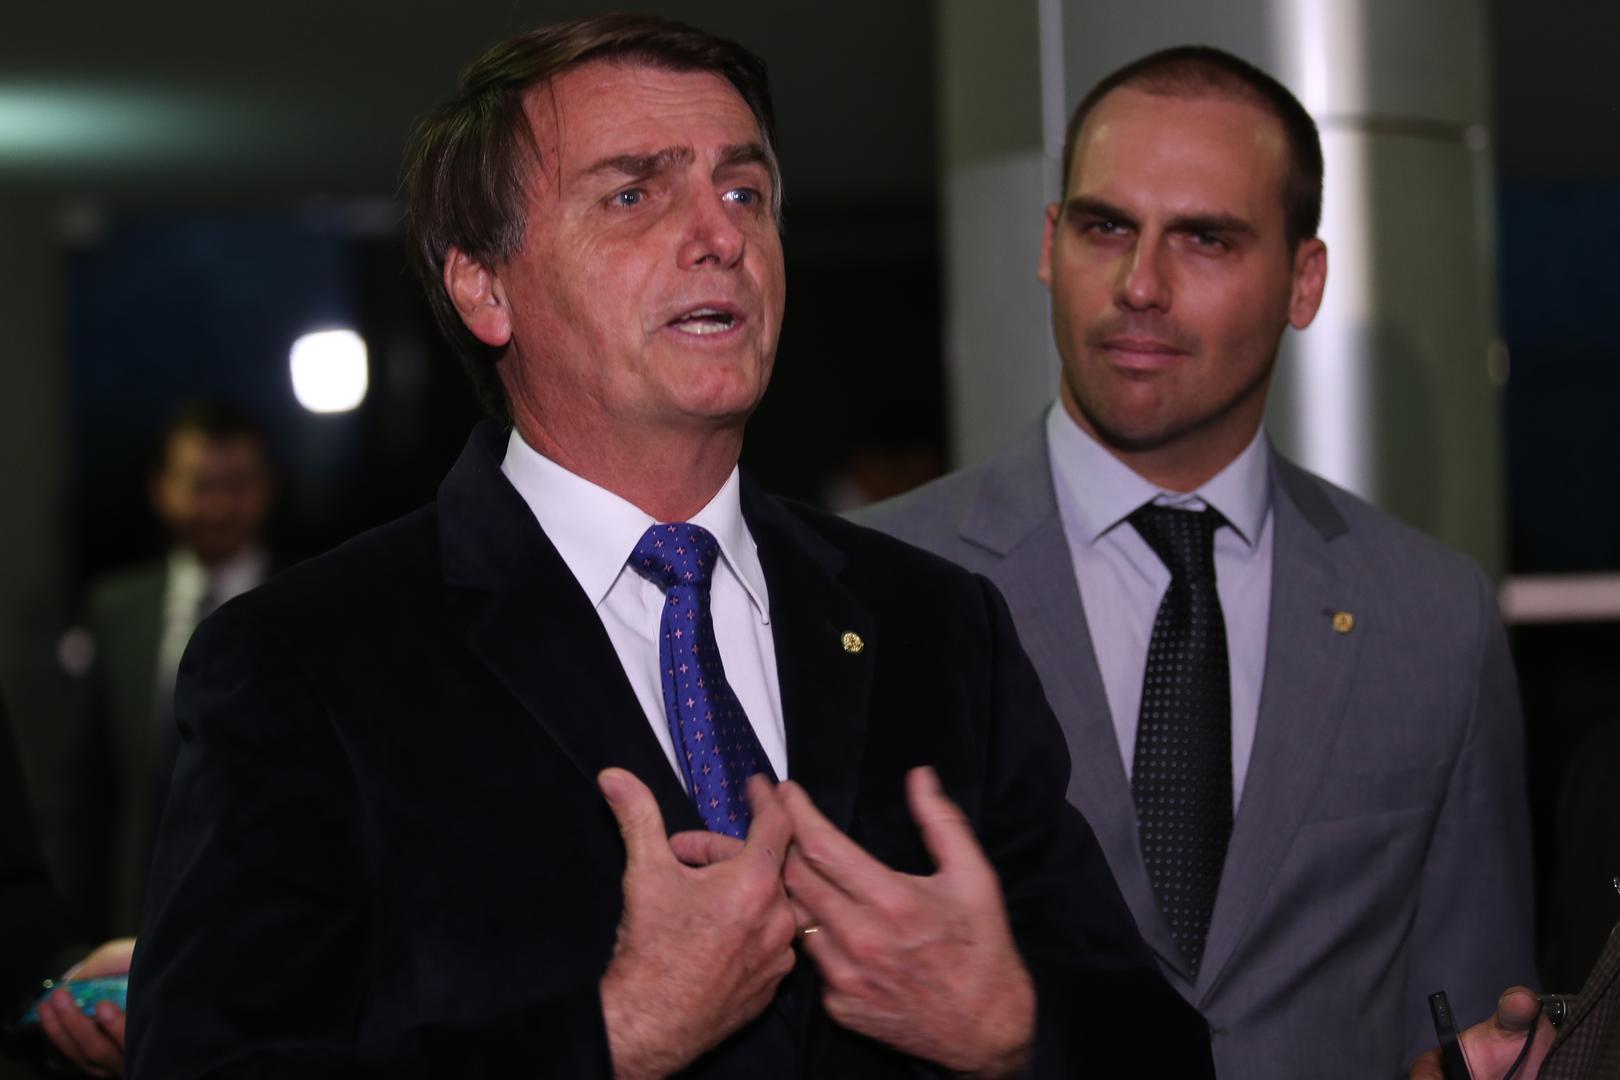 Congressmen Jair Bolsonaro e Eduardo Bolsonaro speak with the press, Brasília, June 21, 2016. 